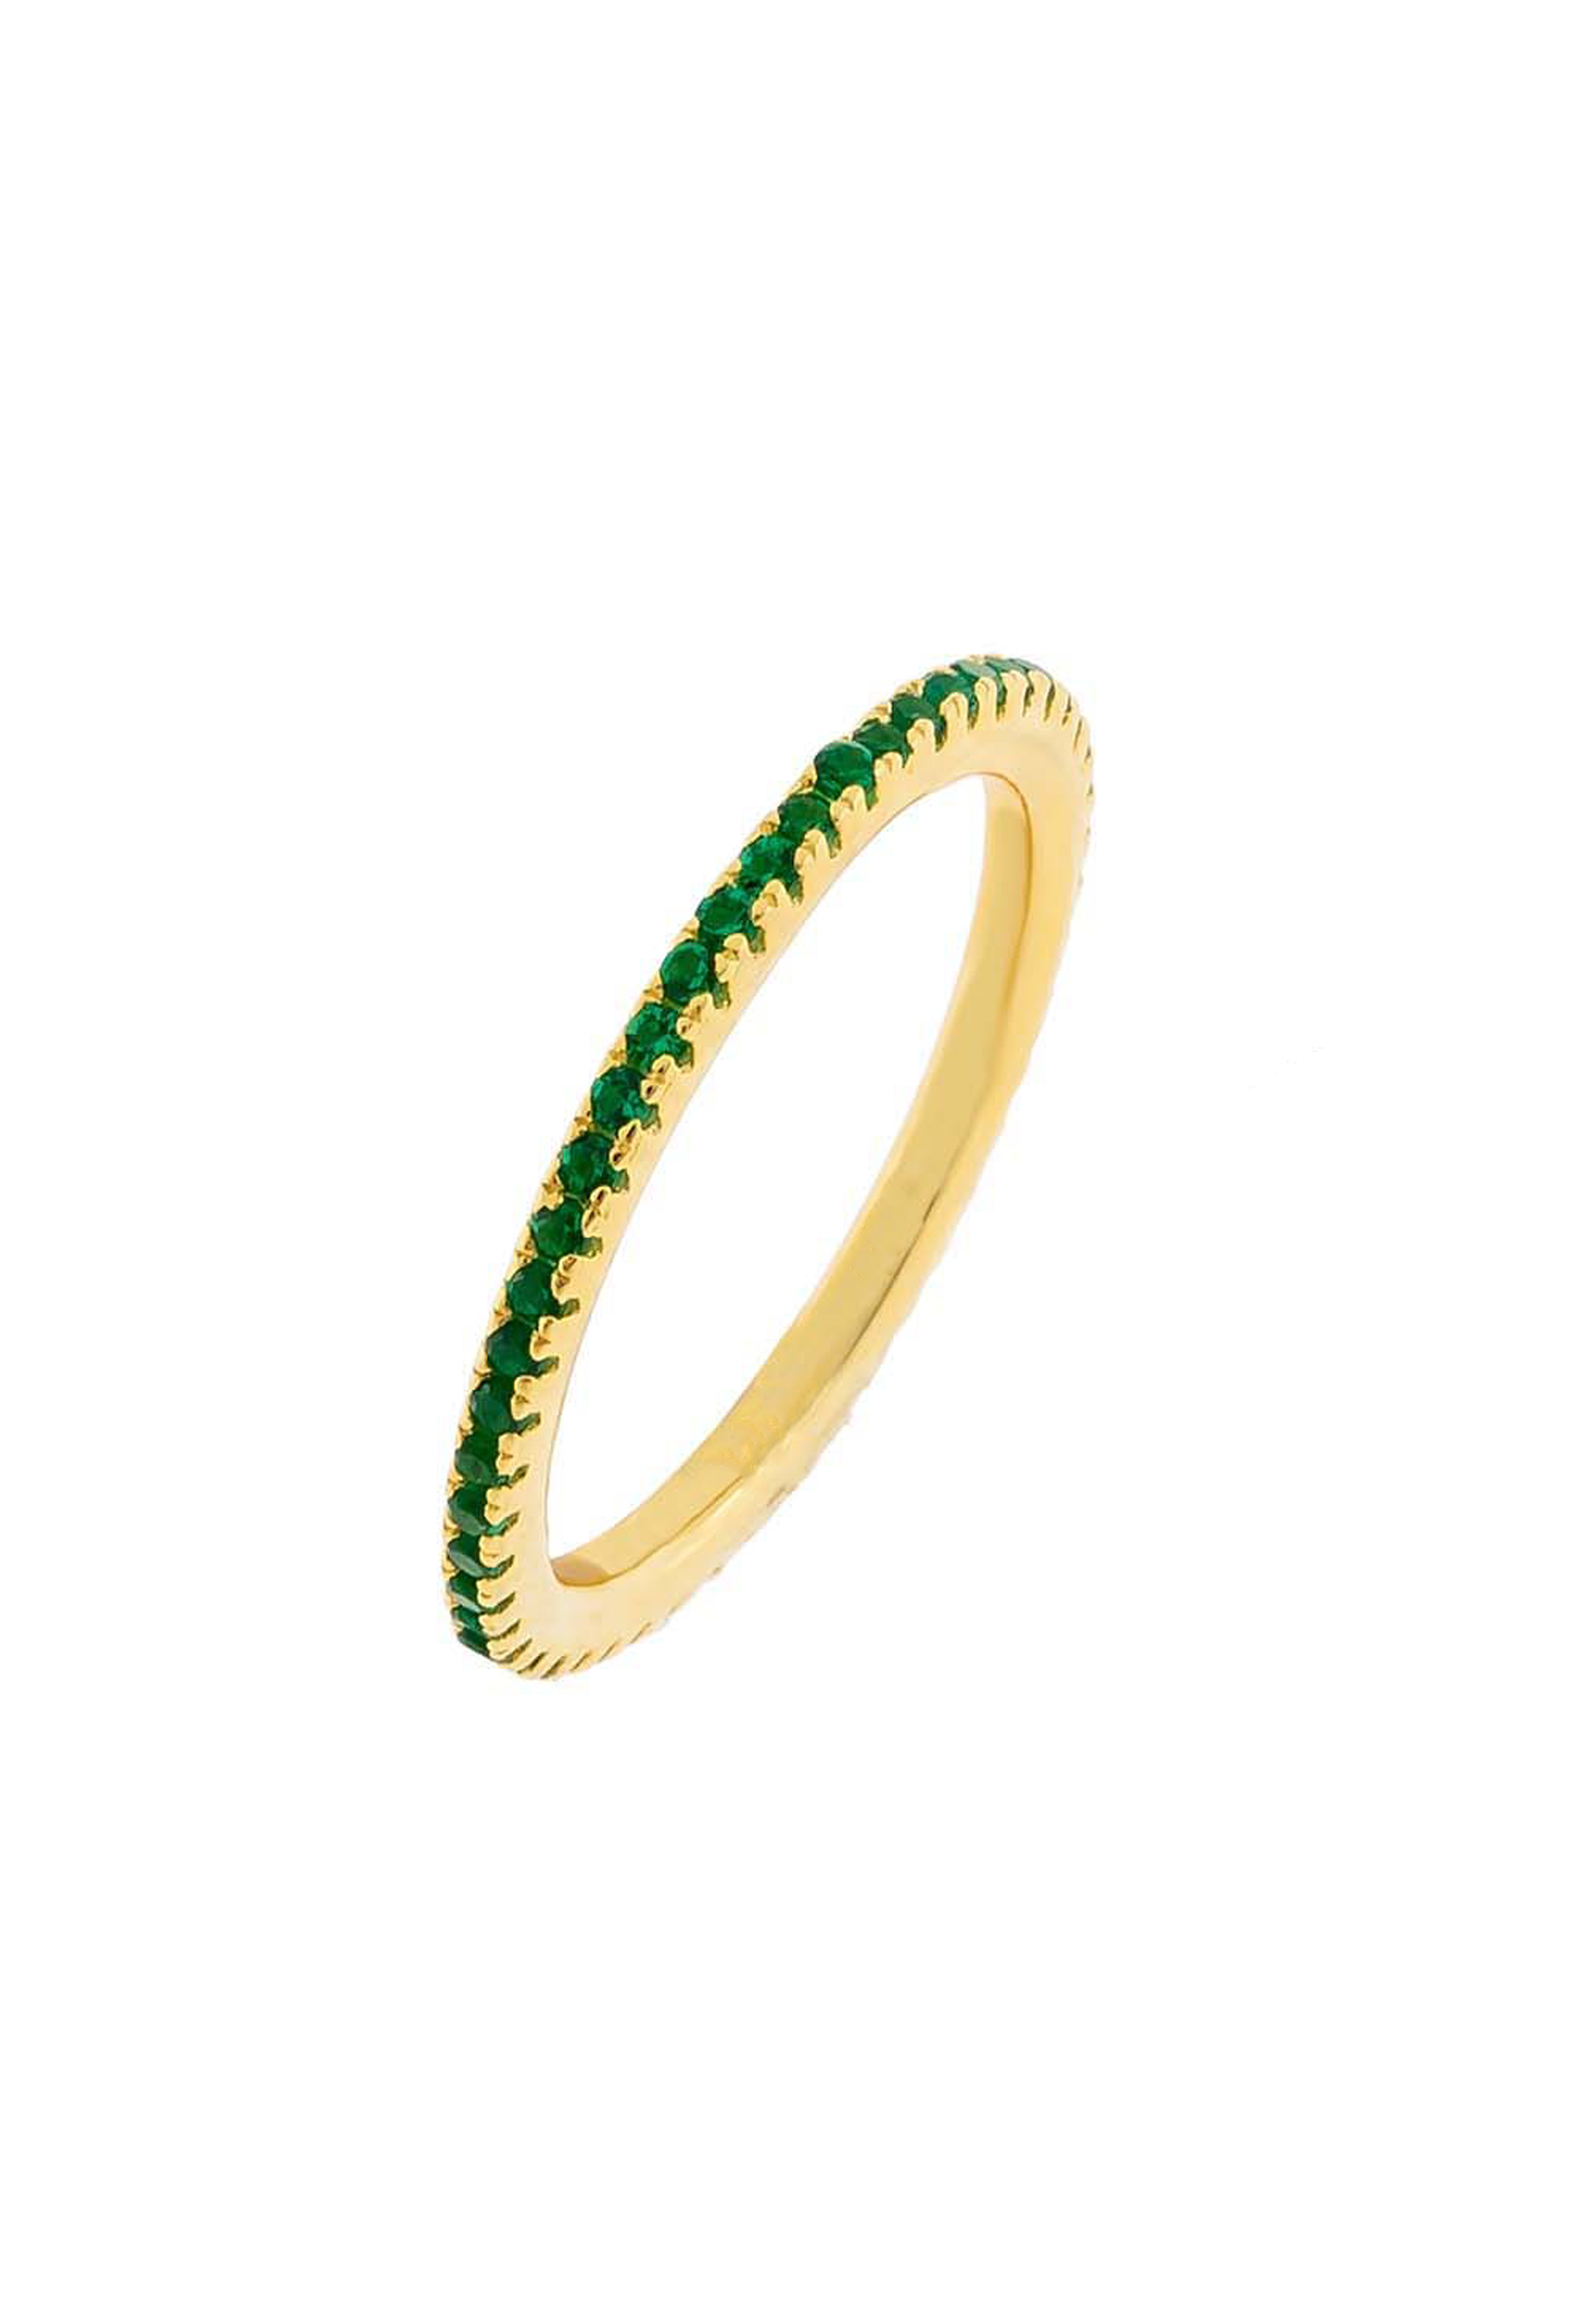 Hart Ring (Emerald) - Gold Vermeil - KESTAN